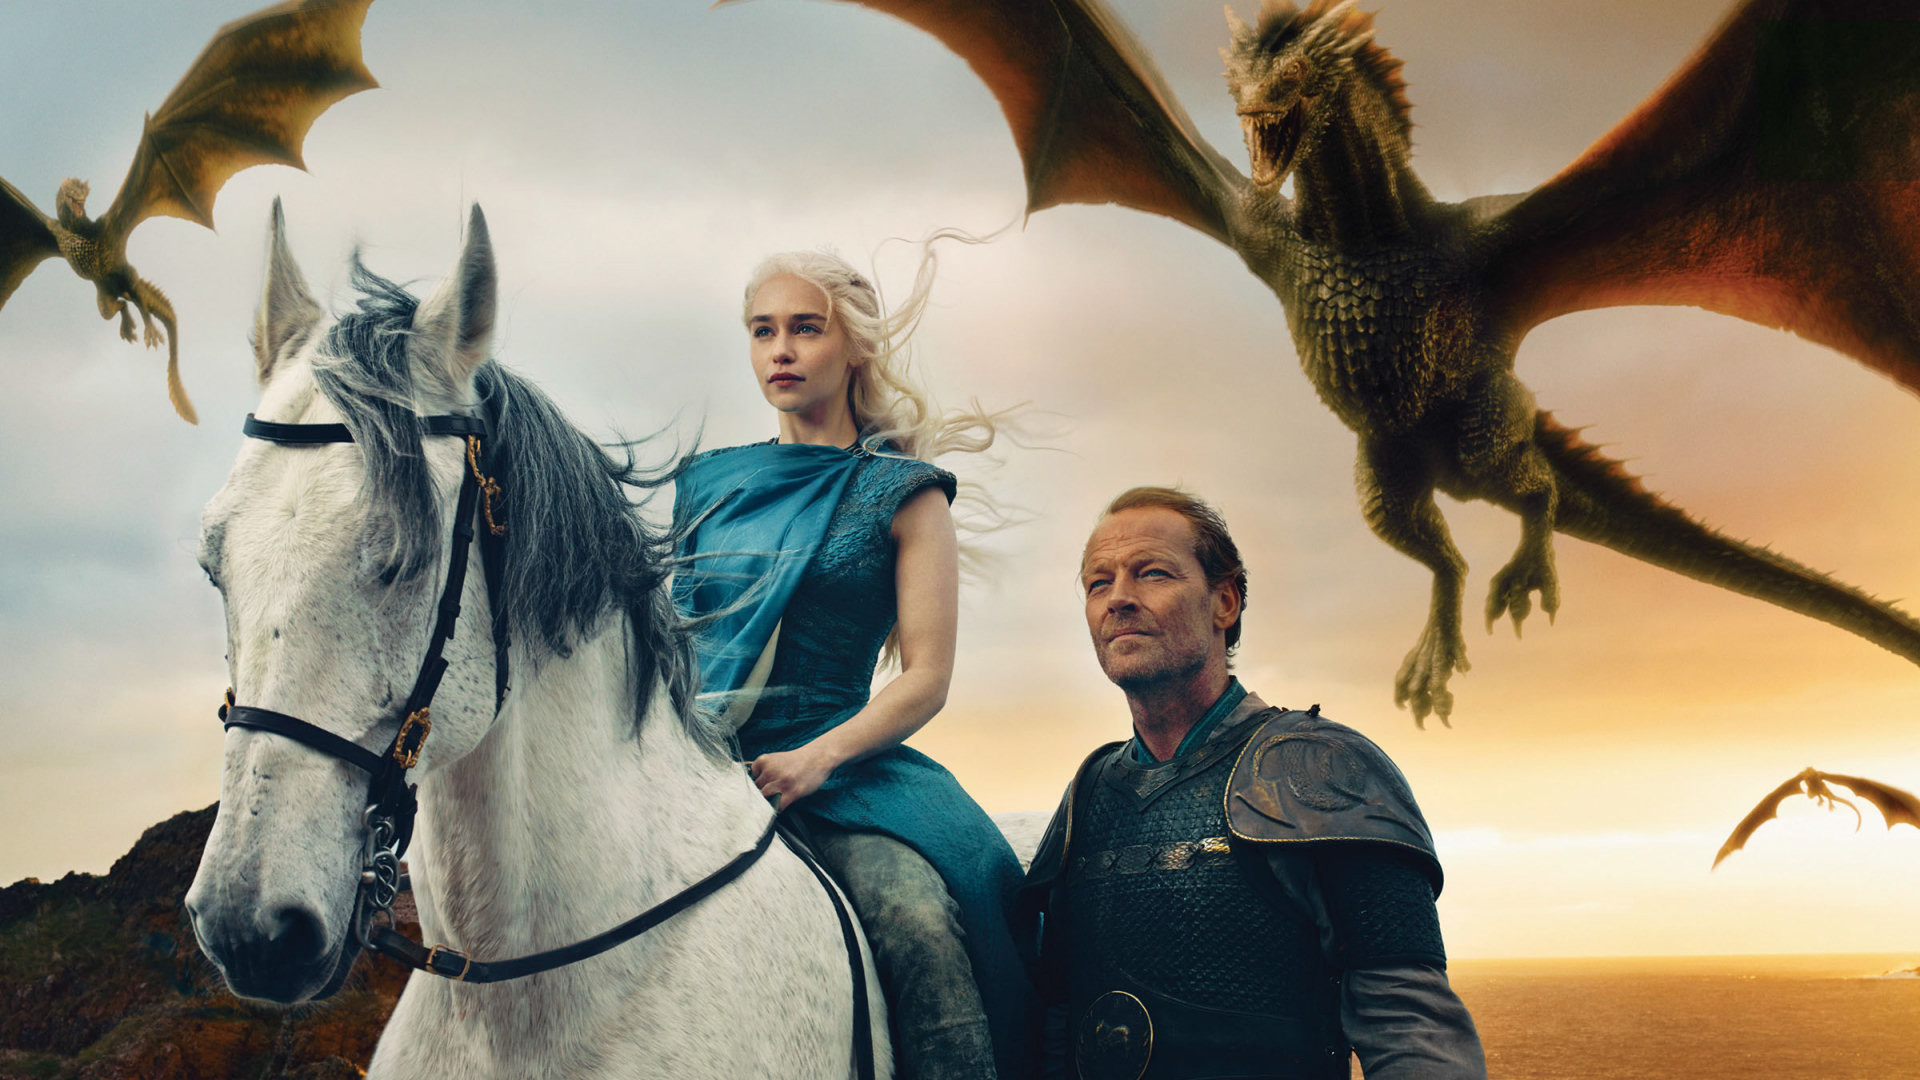 Hakers exigen 6 mdd a HBO para no seguir filtrando episodios de The Game of Thrones